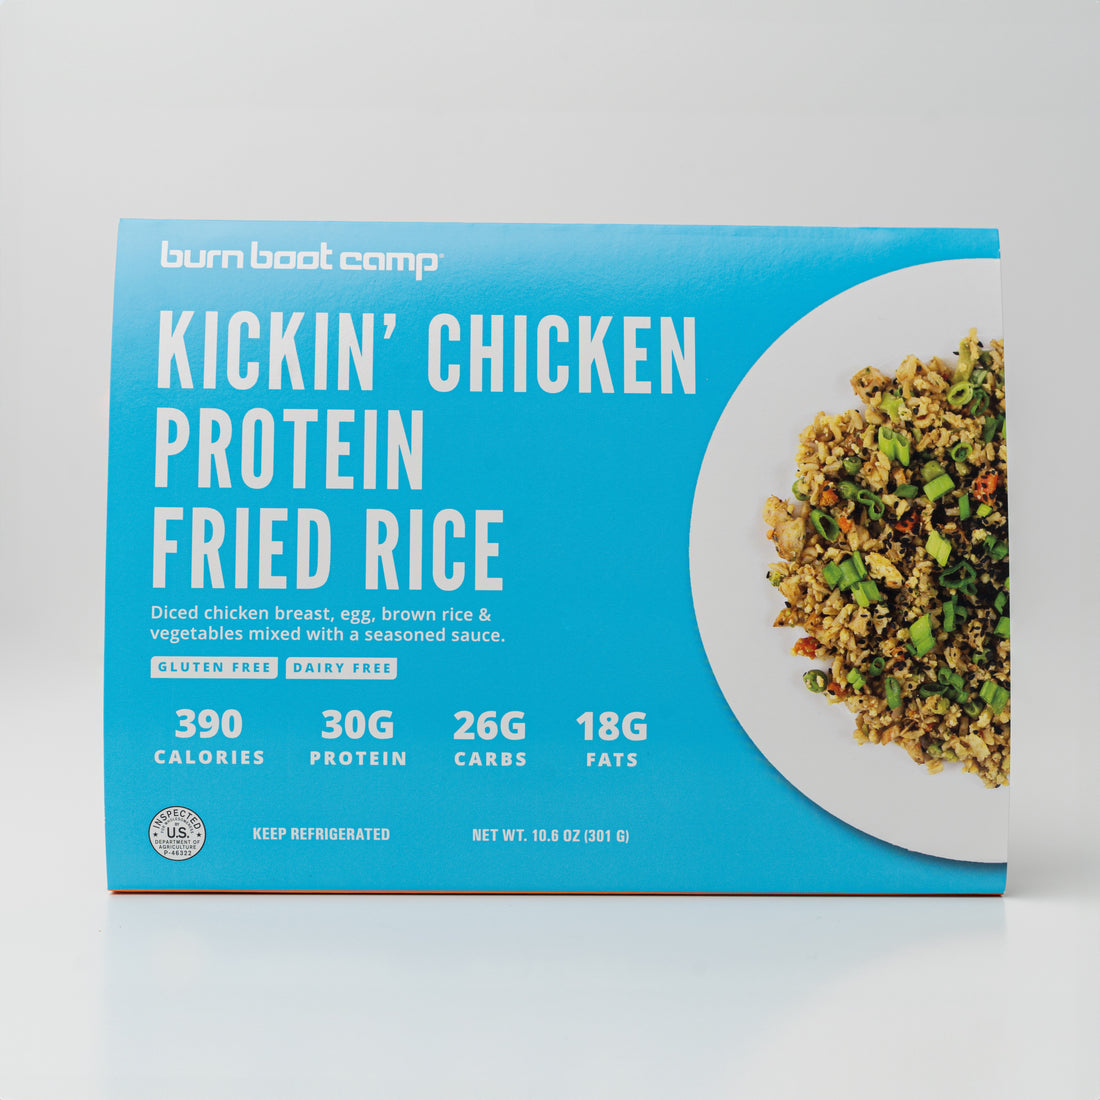 Kickin' Chicken Protein Fried Rice